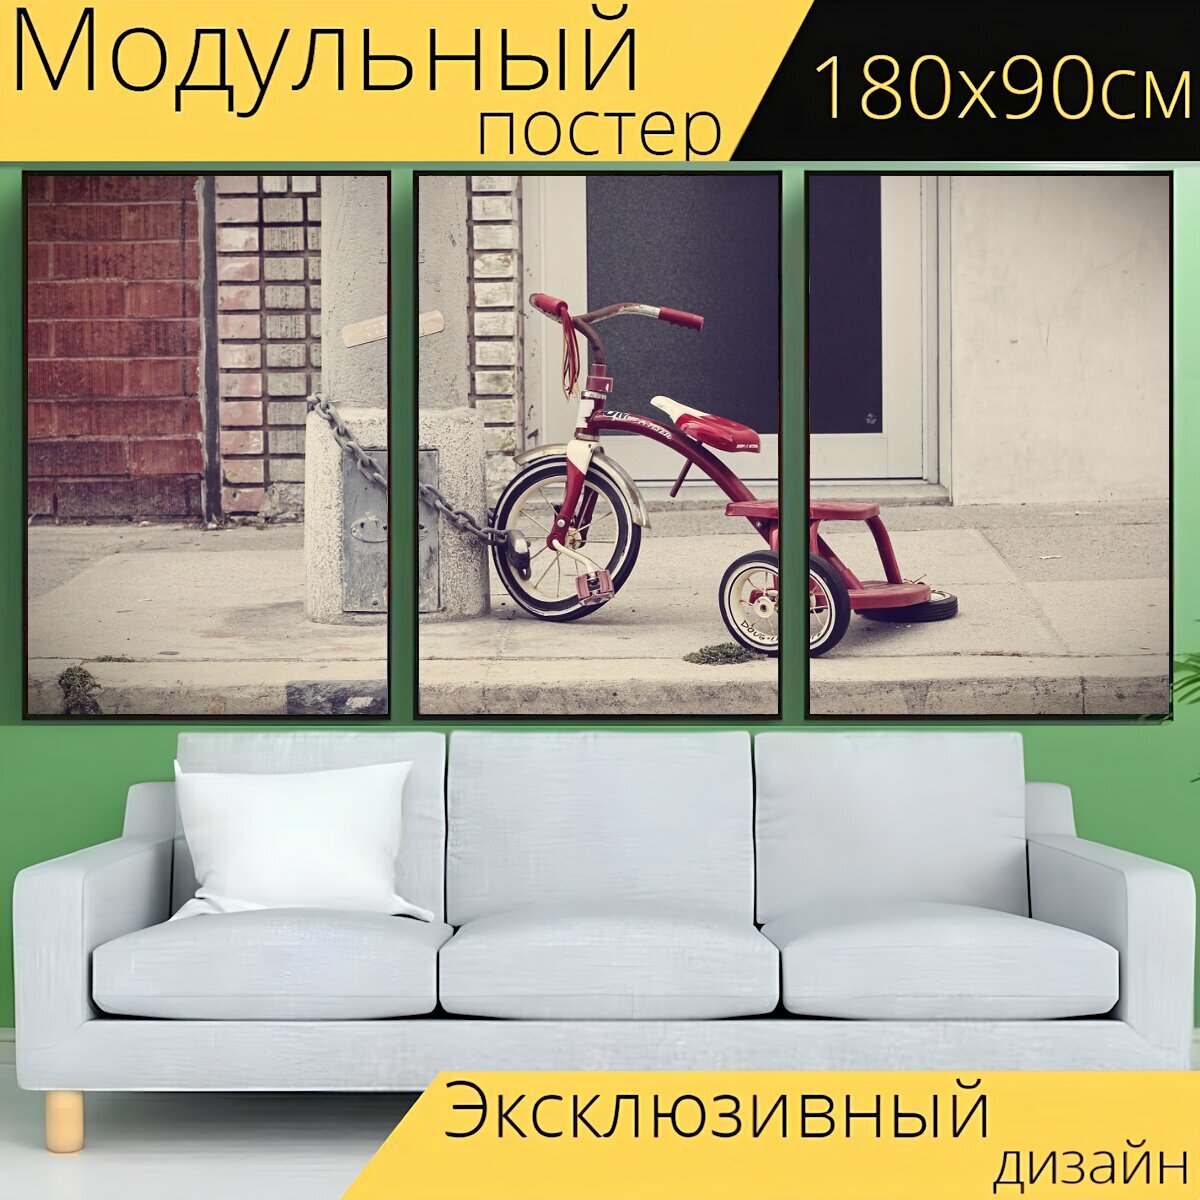 Модульный постер "Трехколесный транспорт, трехколесный велосипед, велосипед" 180 x 90 см. для интерьера